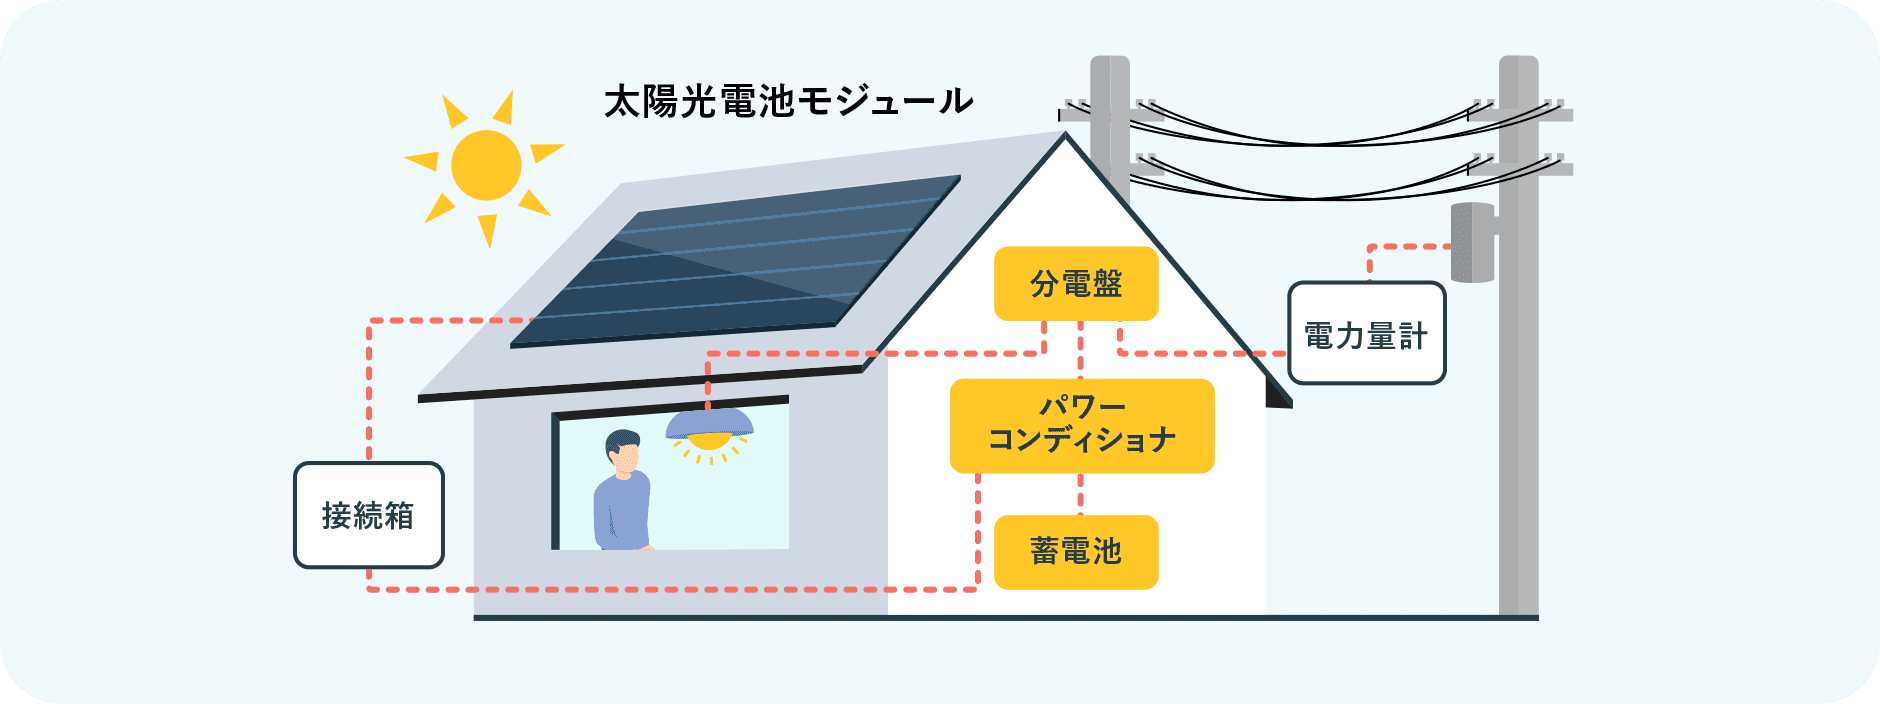 「屋根置き太陽光発電とは」